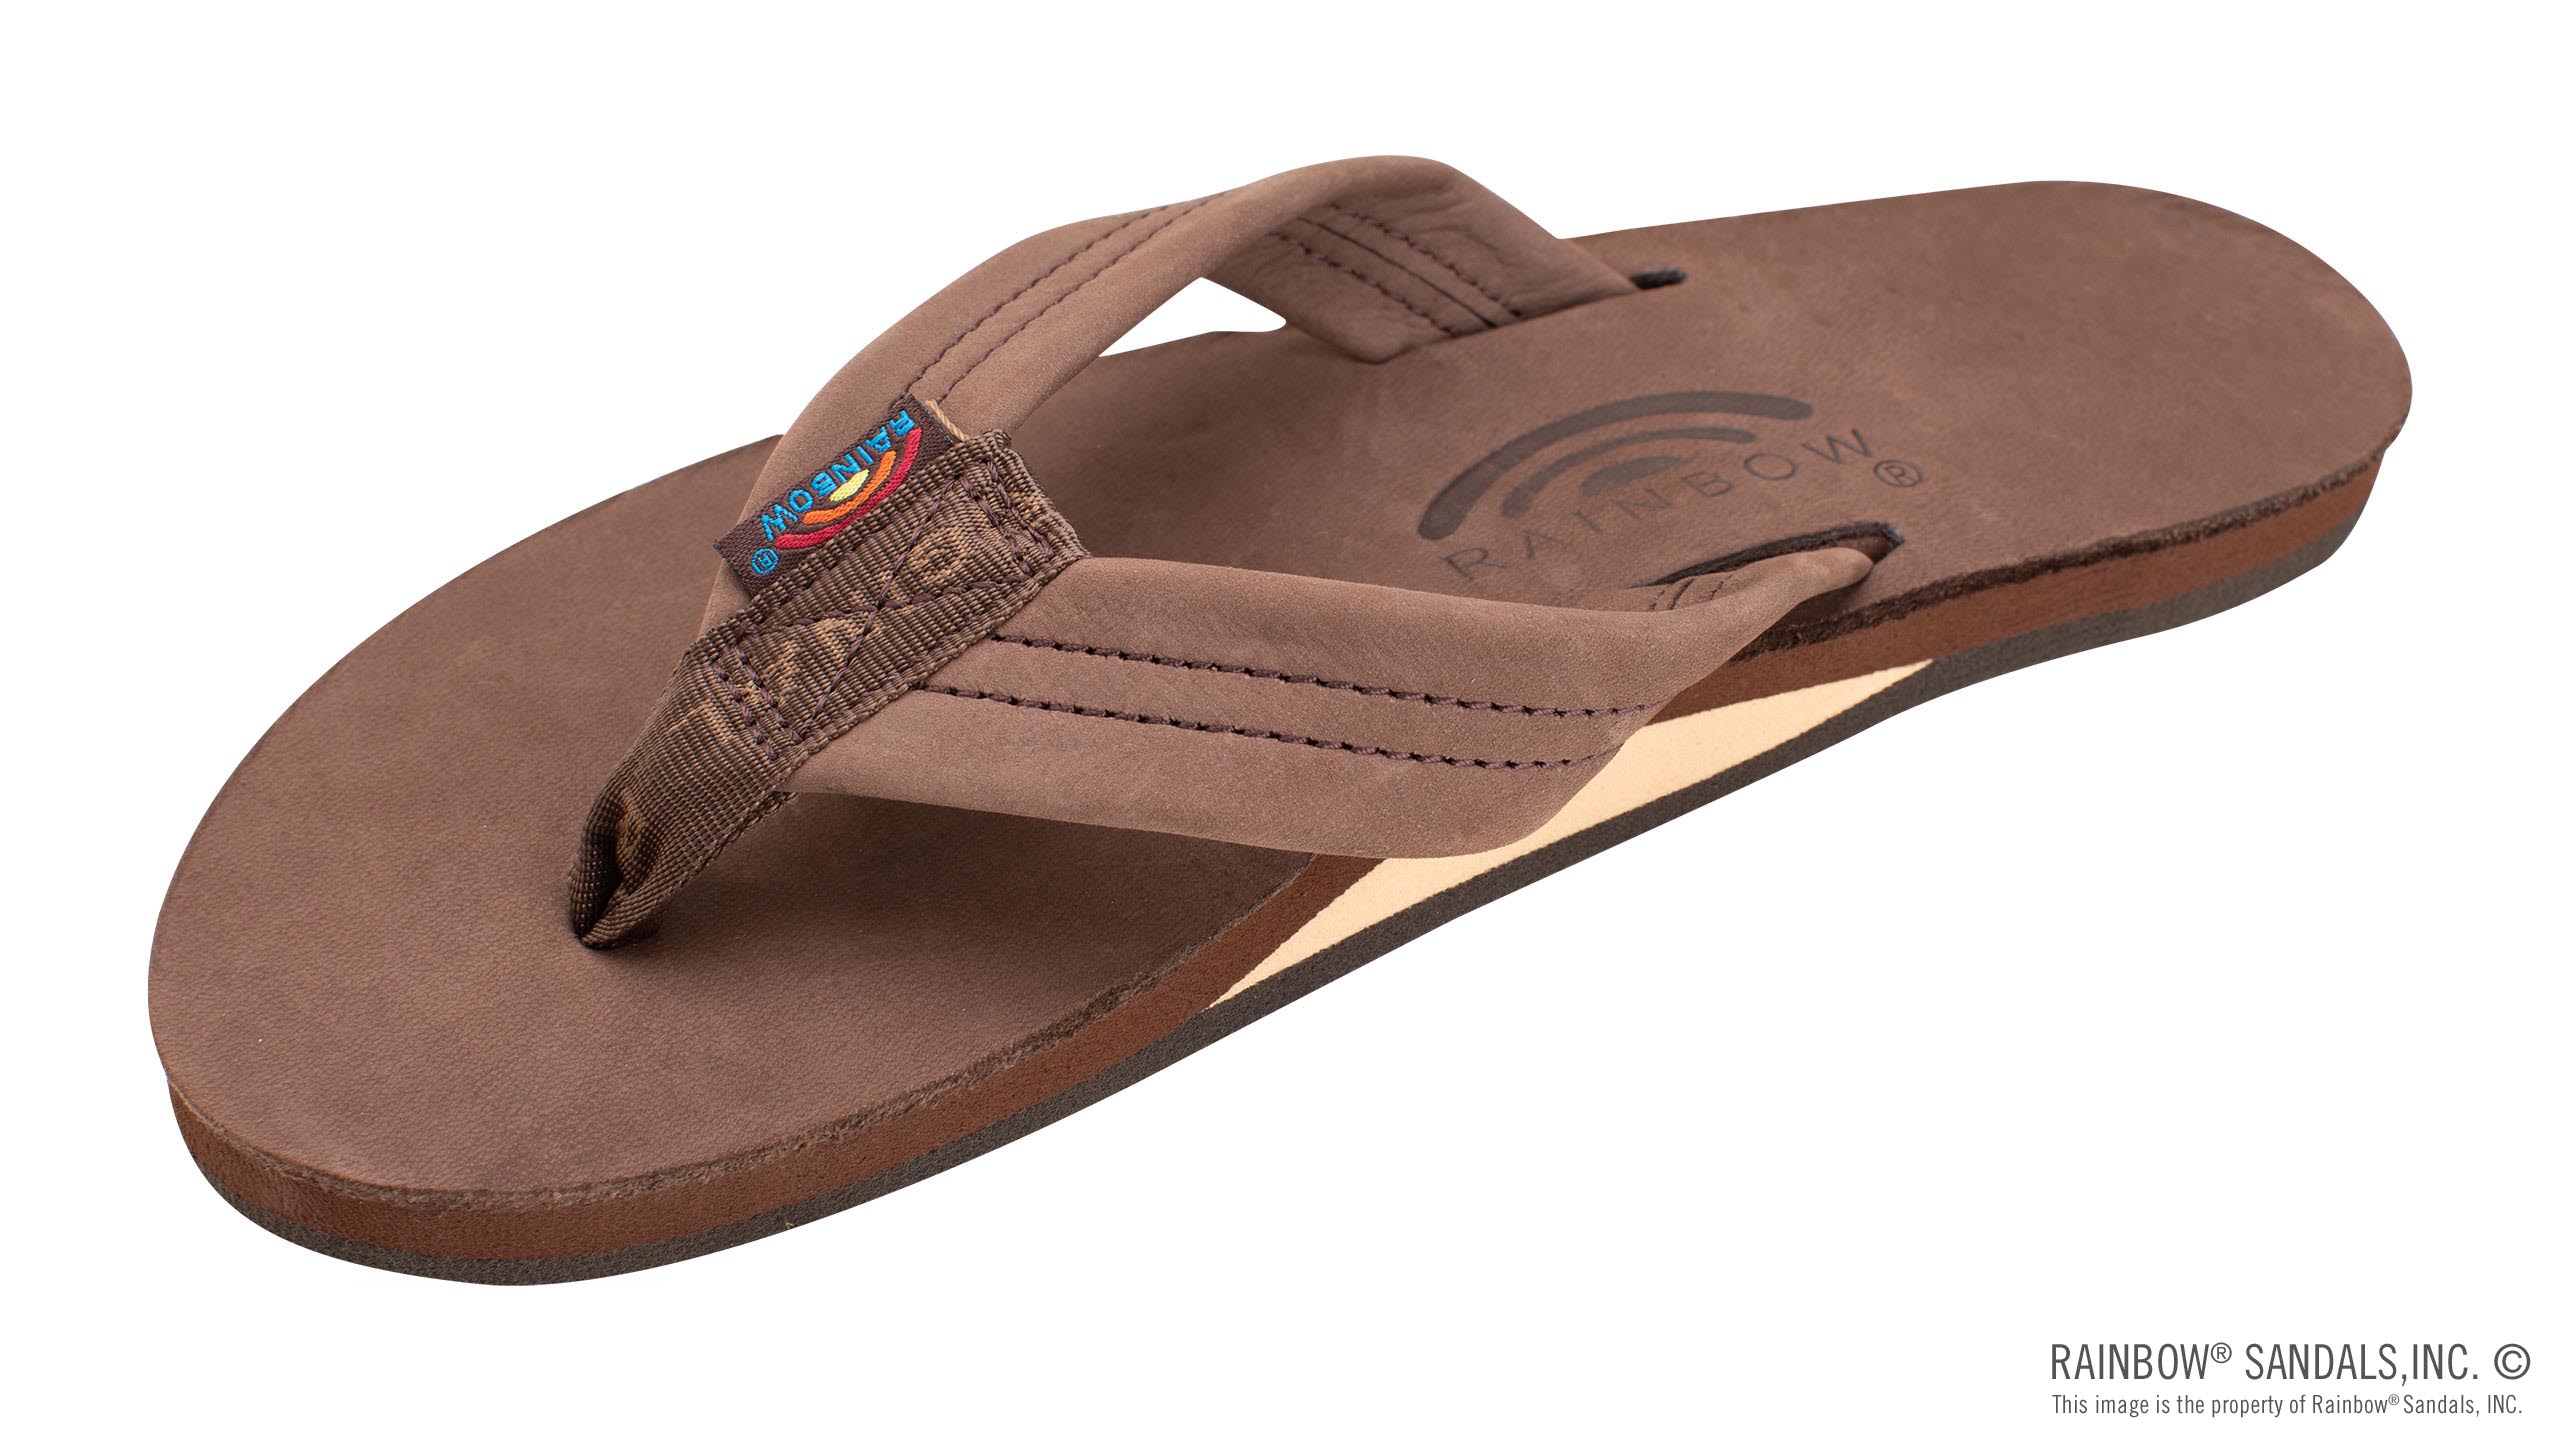 Rainbow Sandals Men's Dark Brown Leather Single Layer Arch Flip Flops